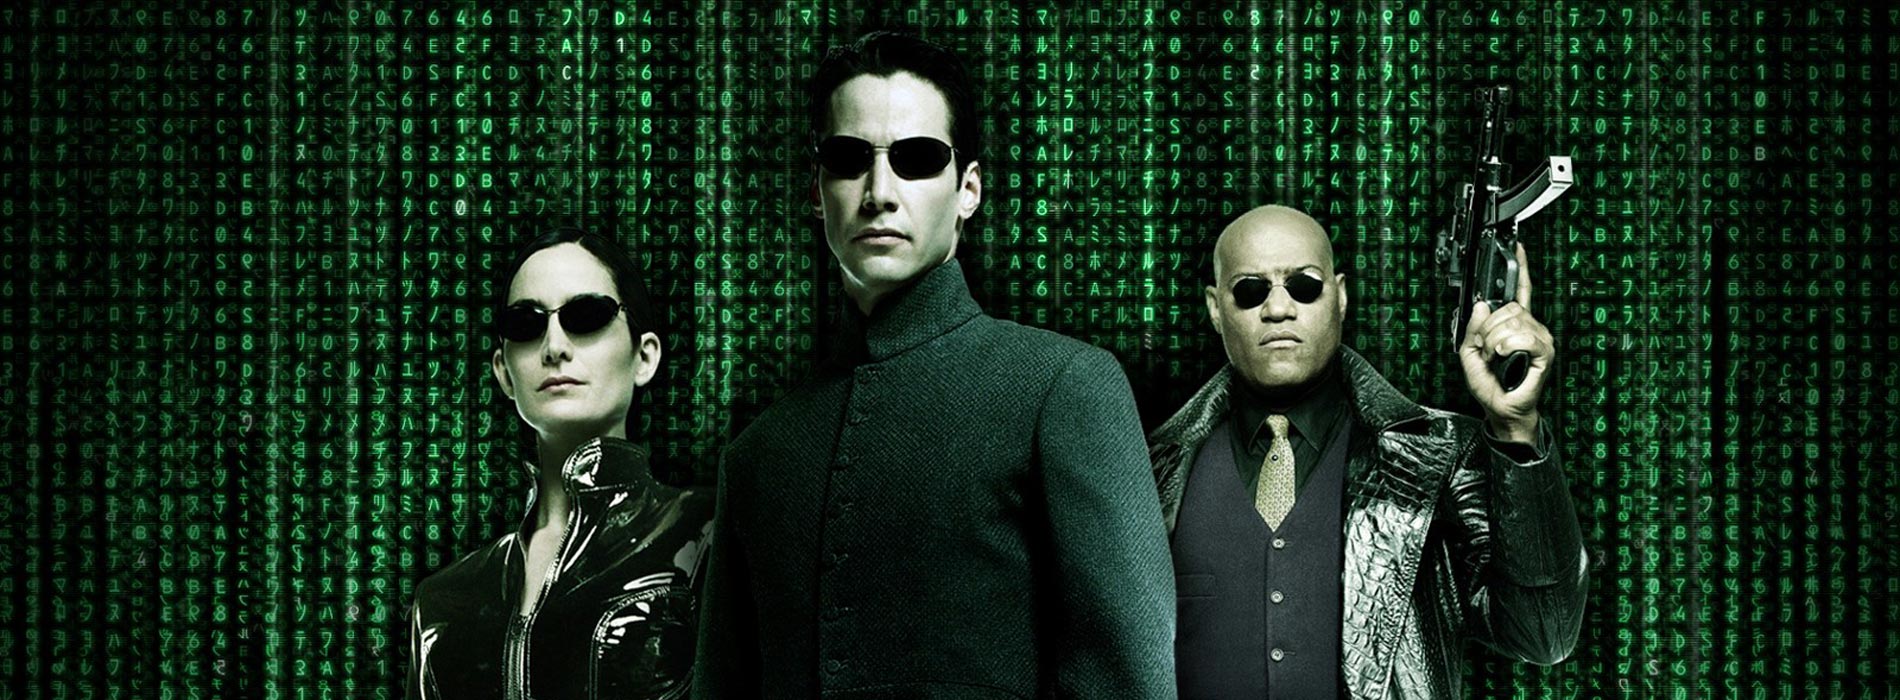 20 anos de Matrix: o que fez o filme se tornar sucesso e referência no cinema?